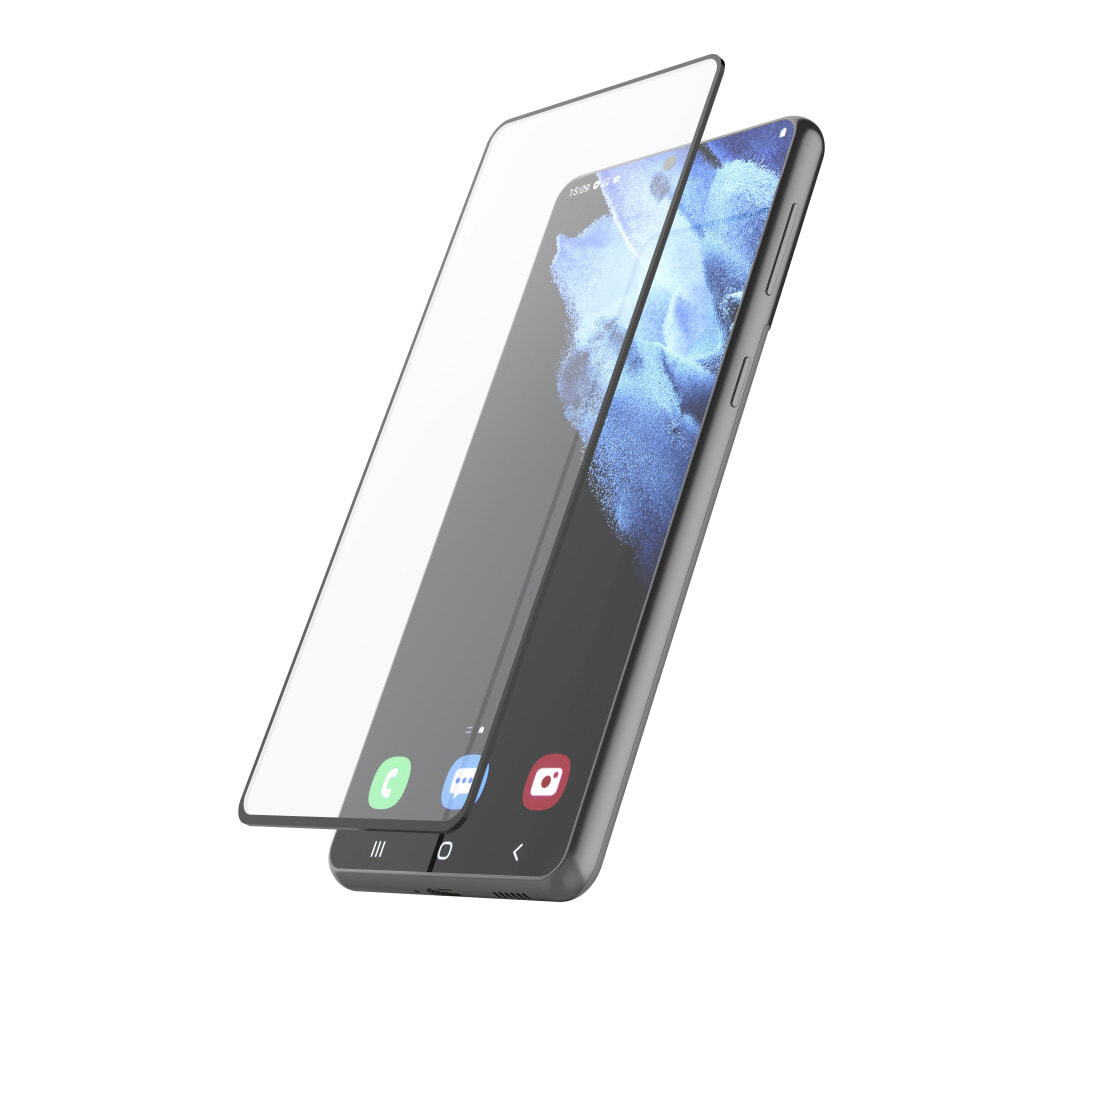 Hama 00213063 защитная пленка / стекло для мобильного телефона Прозрачная защитная пленка Samsung 1 шт